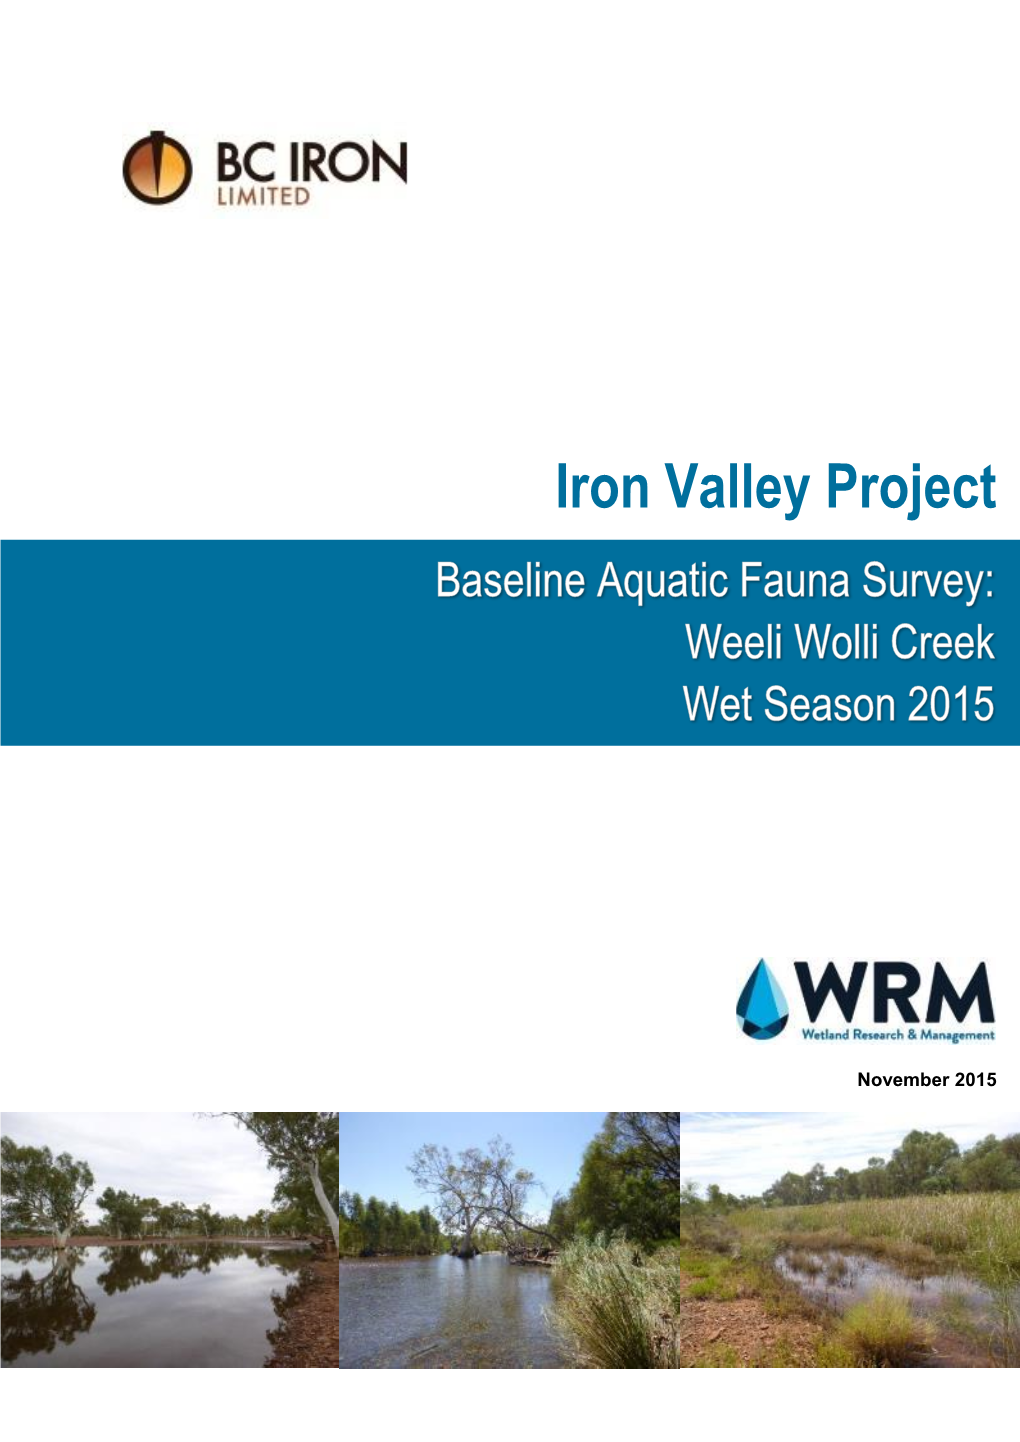 Baseline Aquatic Fauna Survey Wet Season 2015